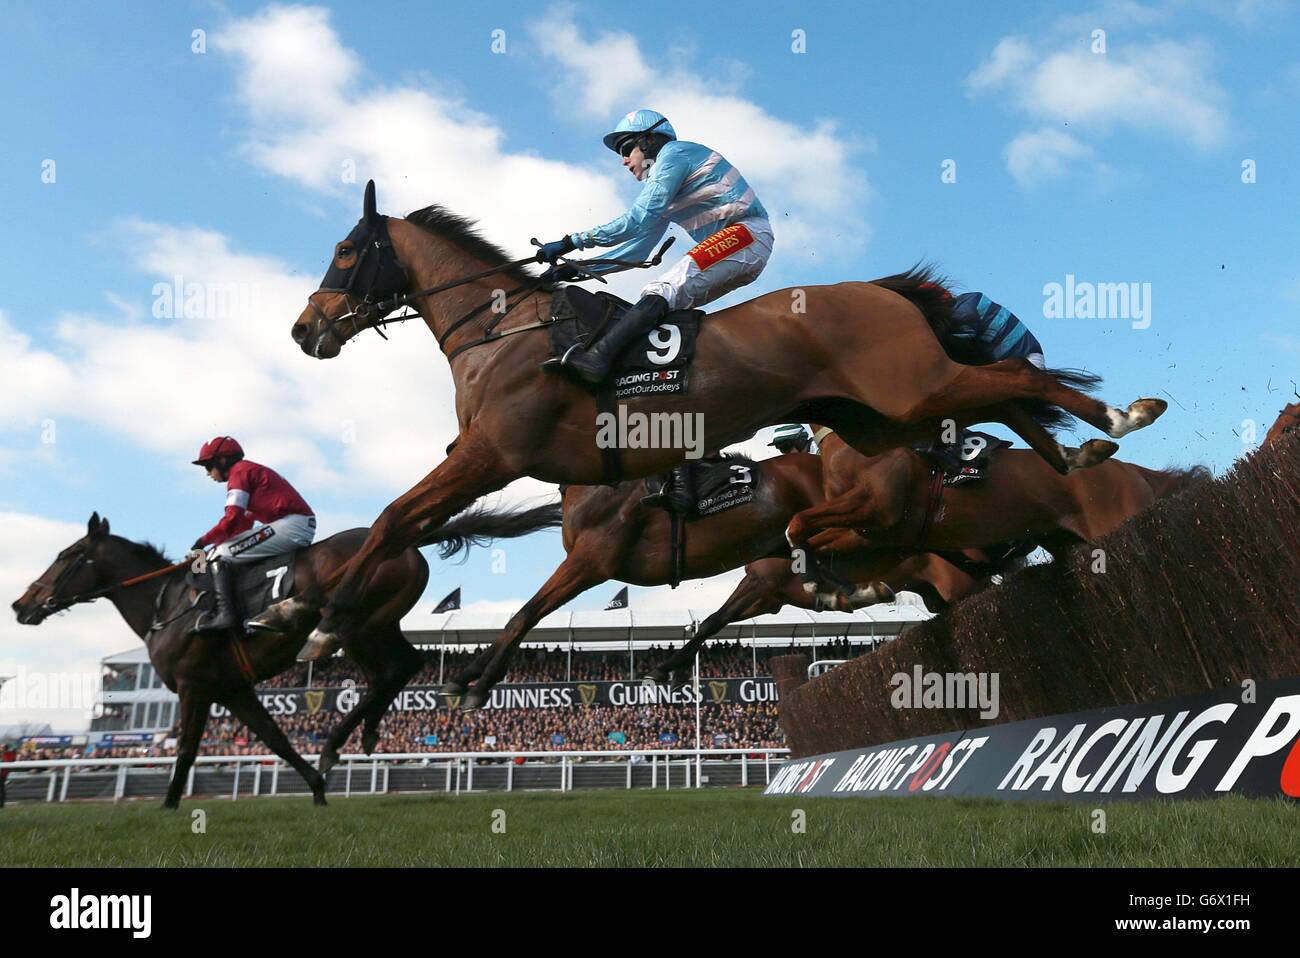 Horse Racing - 2014 Festival di Cheltenham - Campione giorno - Cheltenham Racecourse Foto Stock